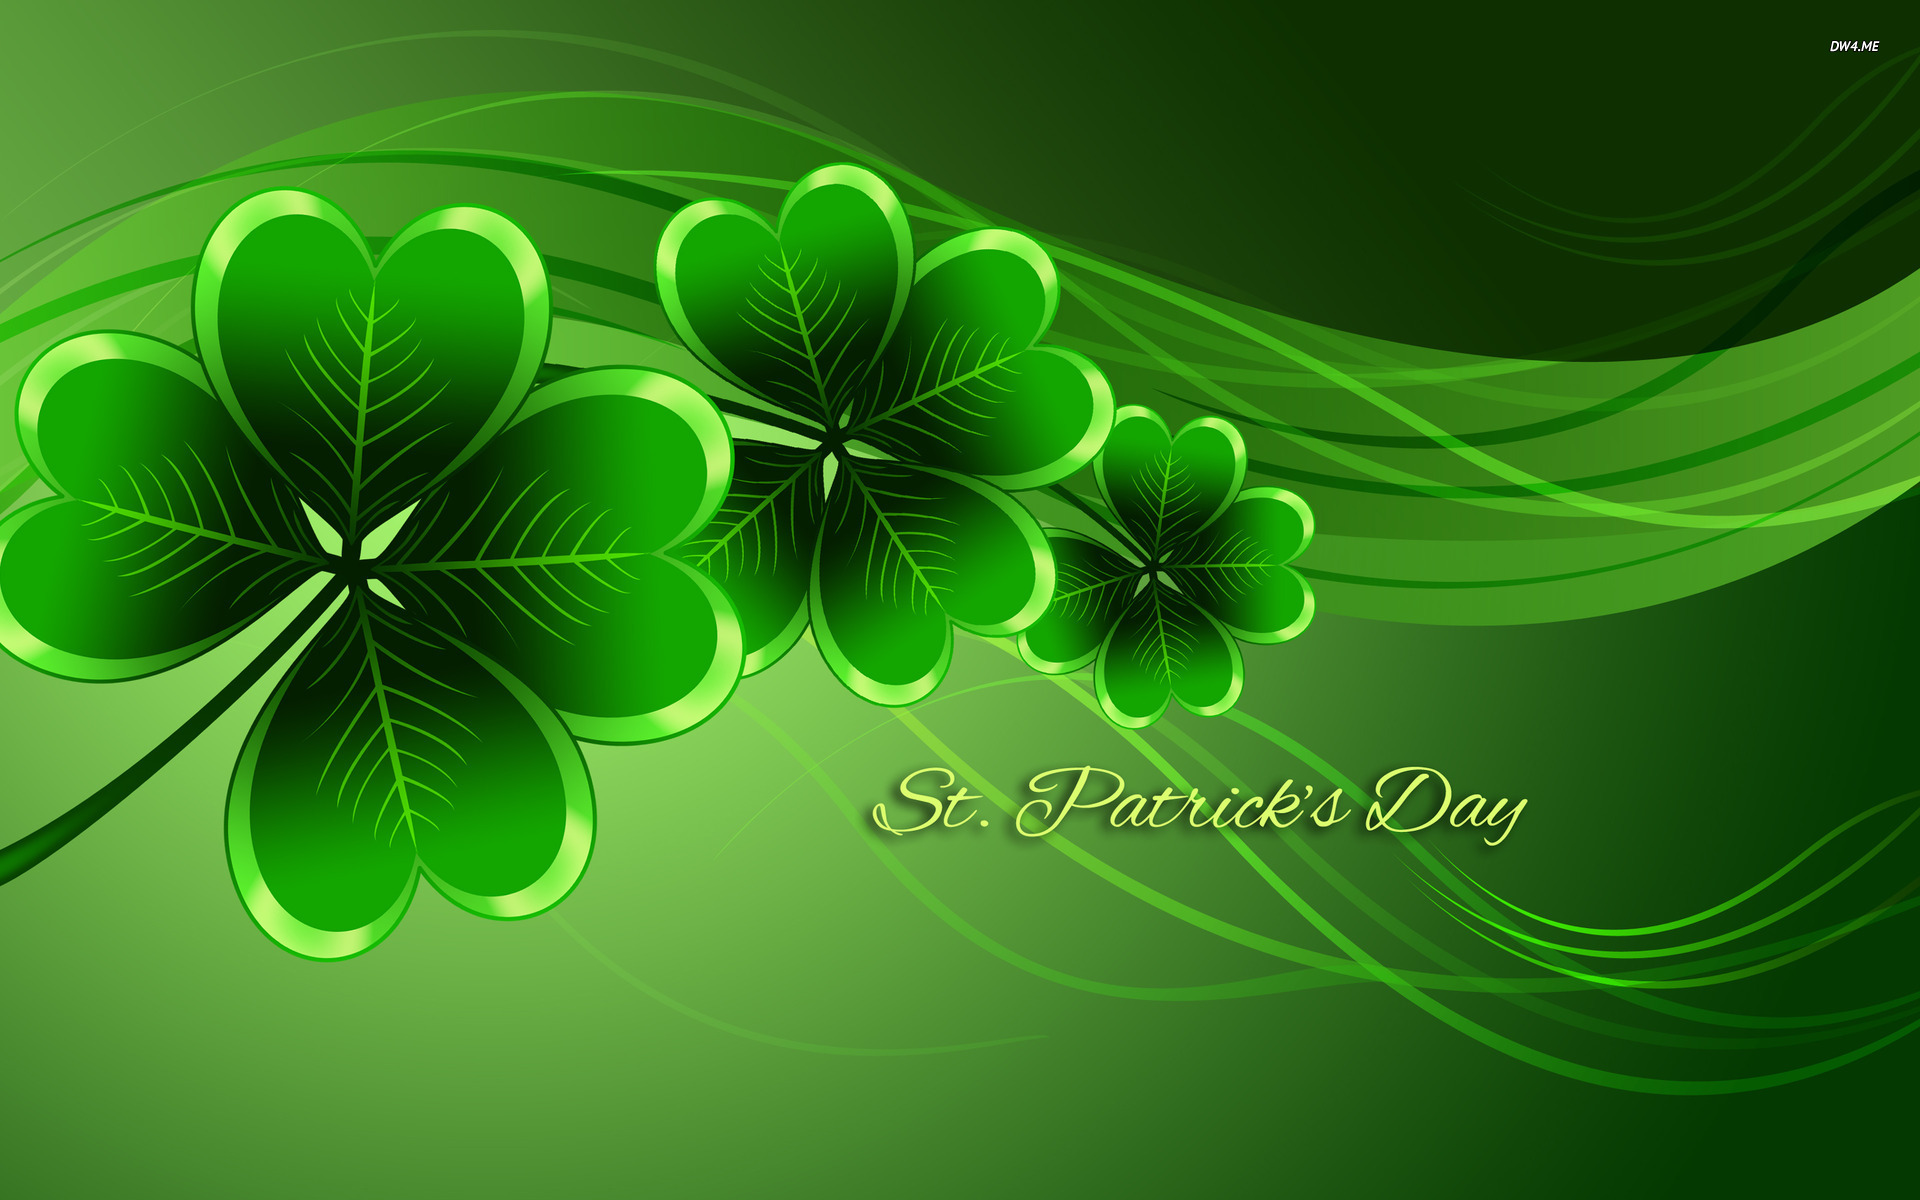 Unique St. Patrick's Day Desktop Background Images, Pictures Free ...